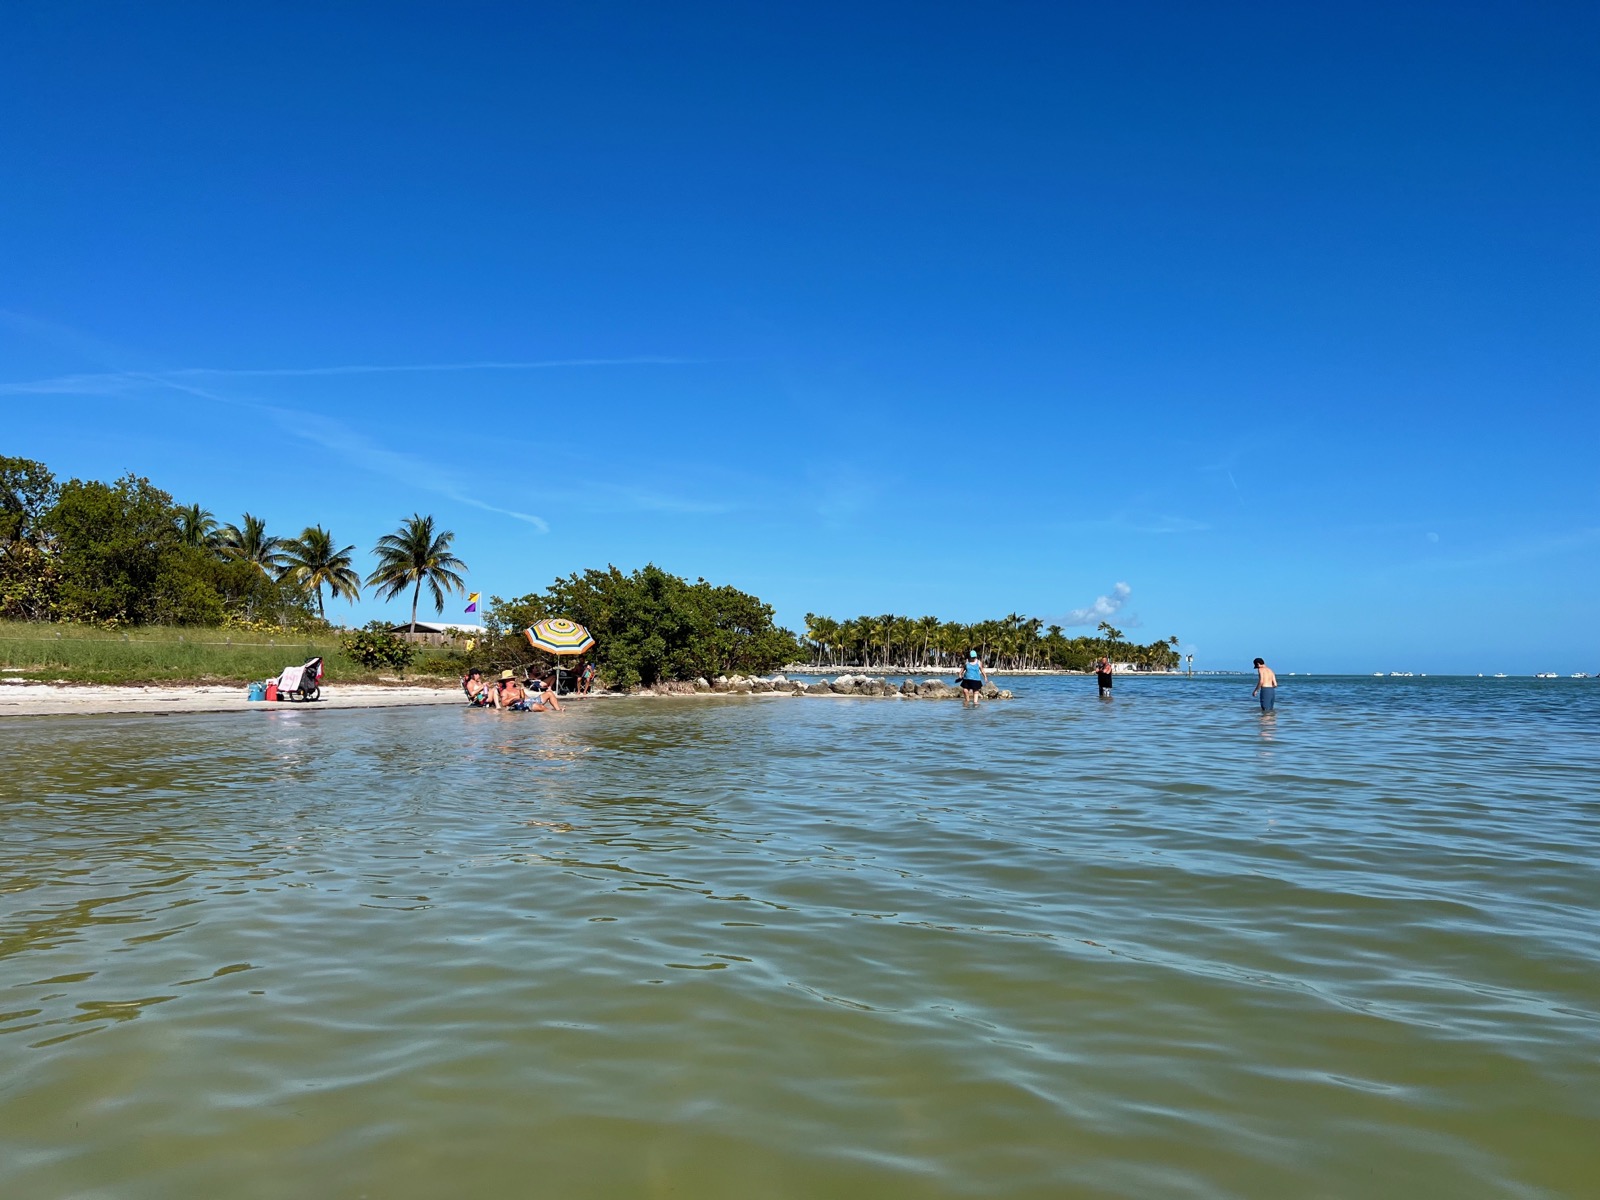 Curry Hammock State Park : plage et kayak dans les îles Keys de Floride !